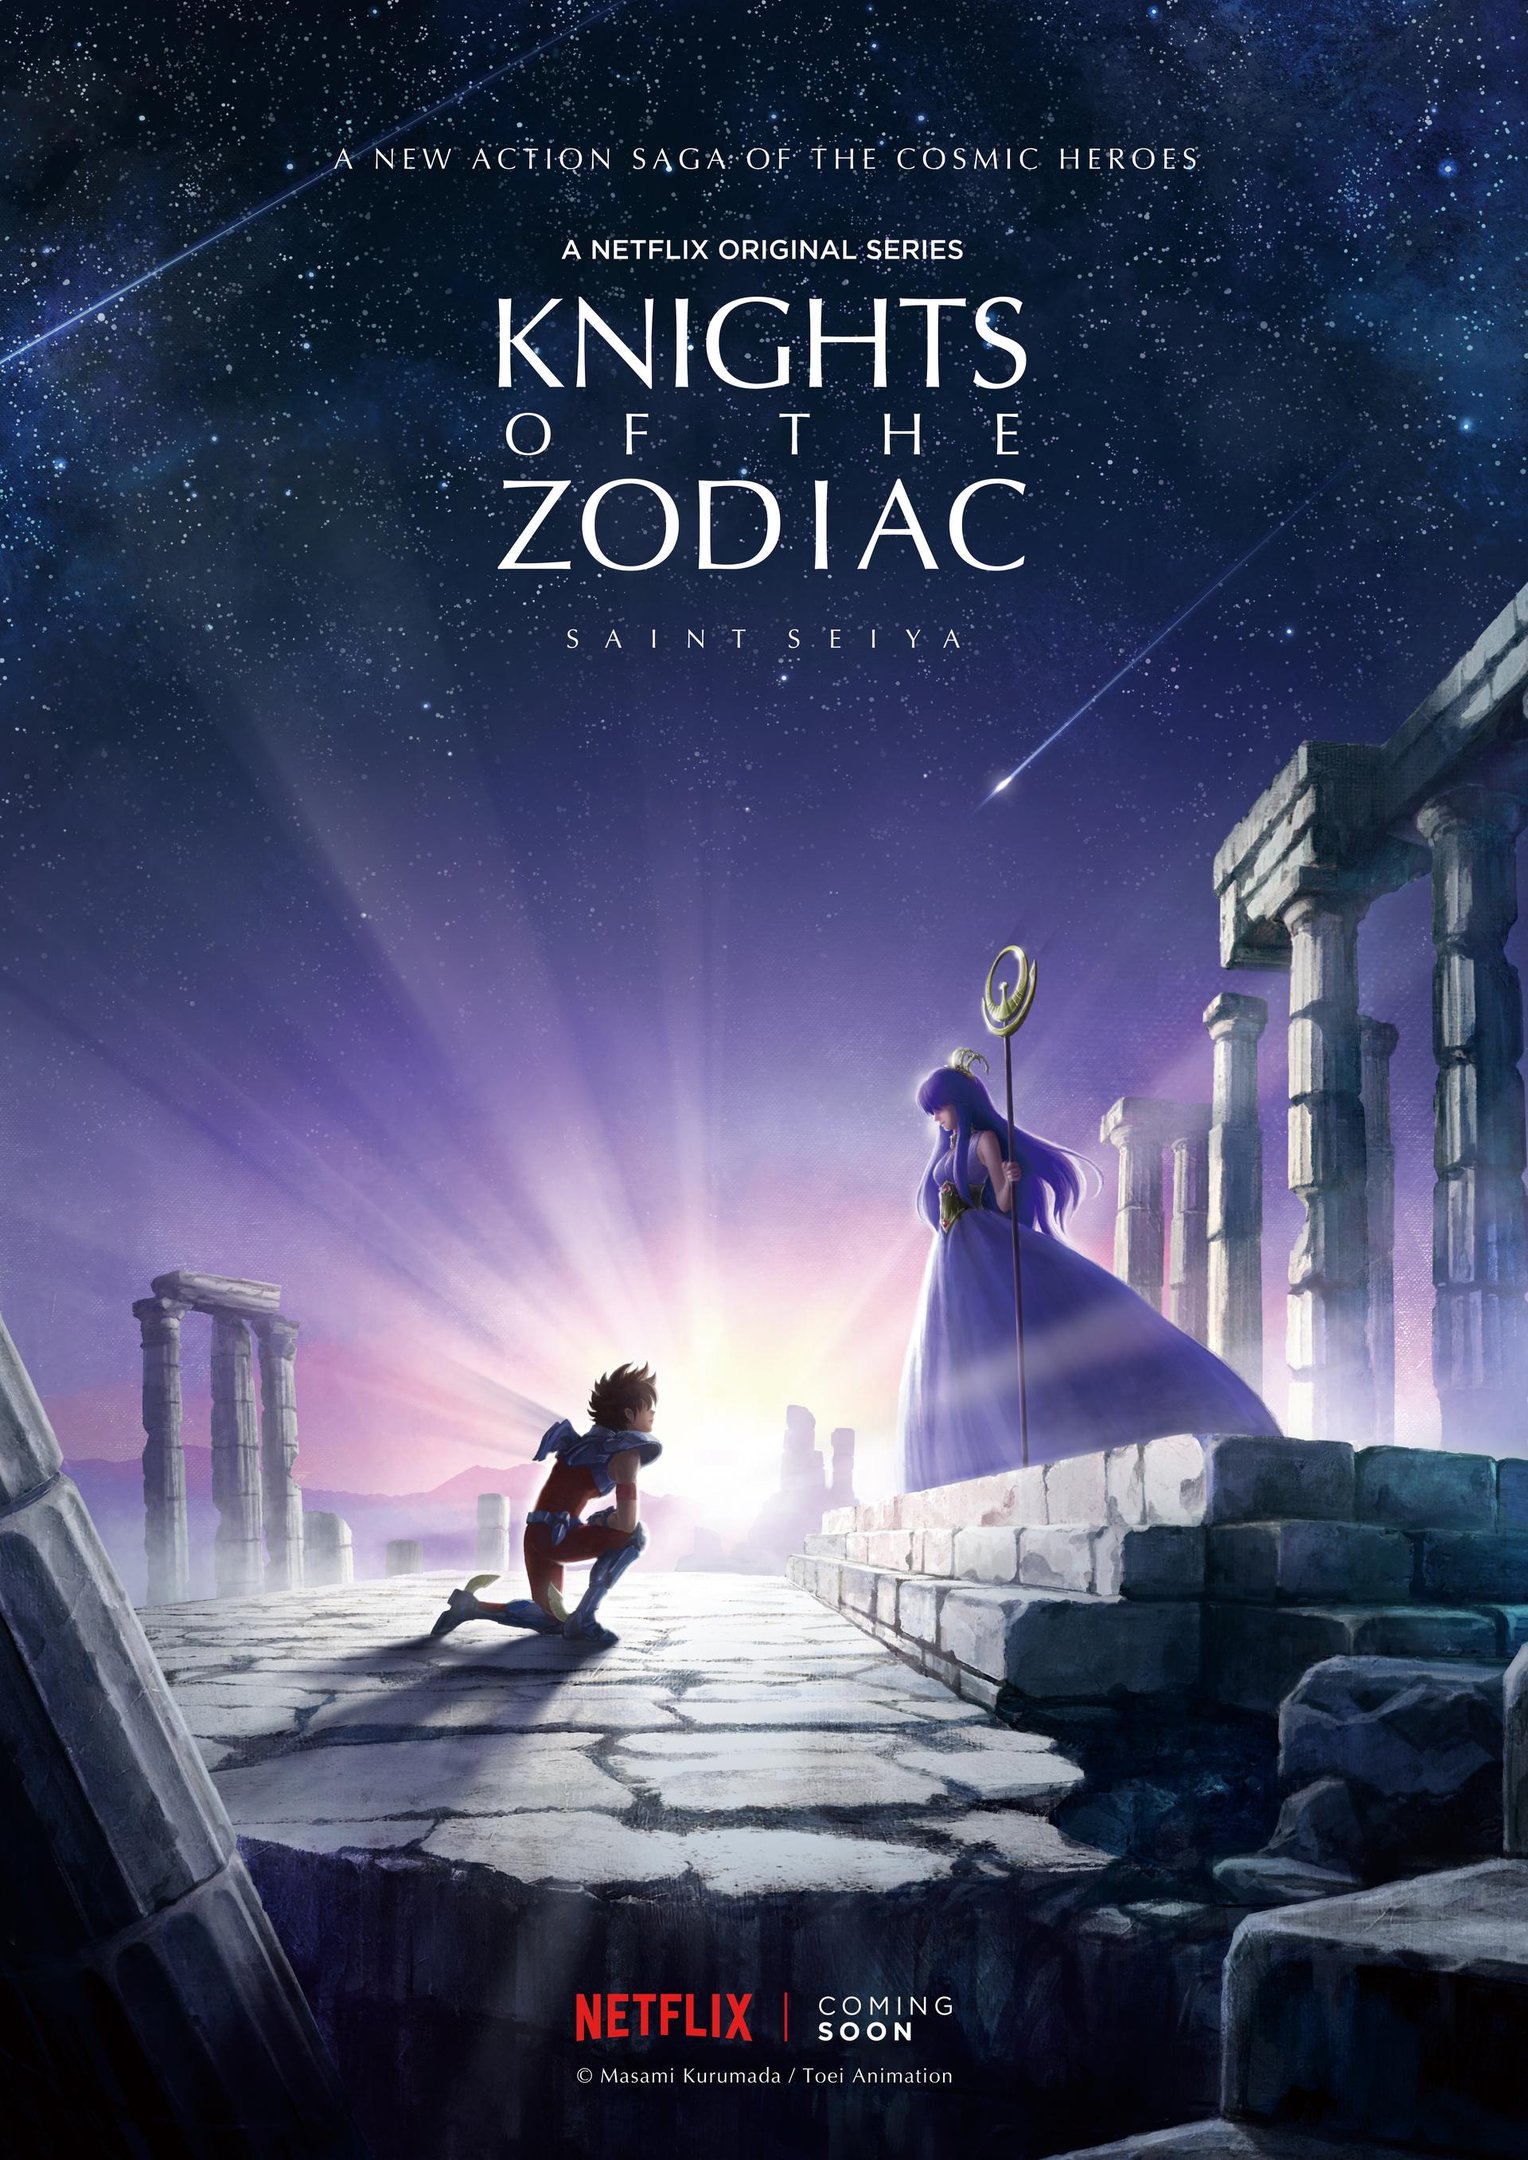 Saint Seiya / Cavaleiros do Zodíaco, Netflix divulga visual e estreia em  2019 – Tomodachi Nerd's